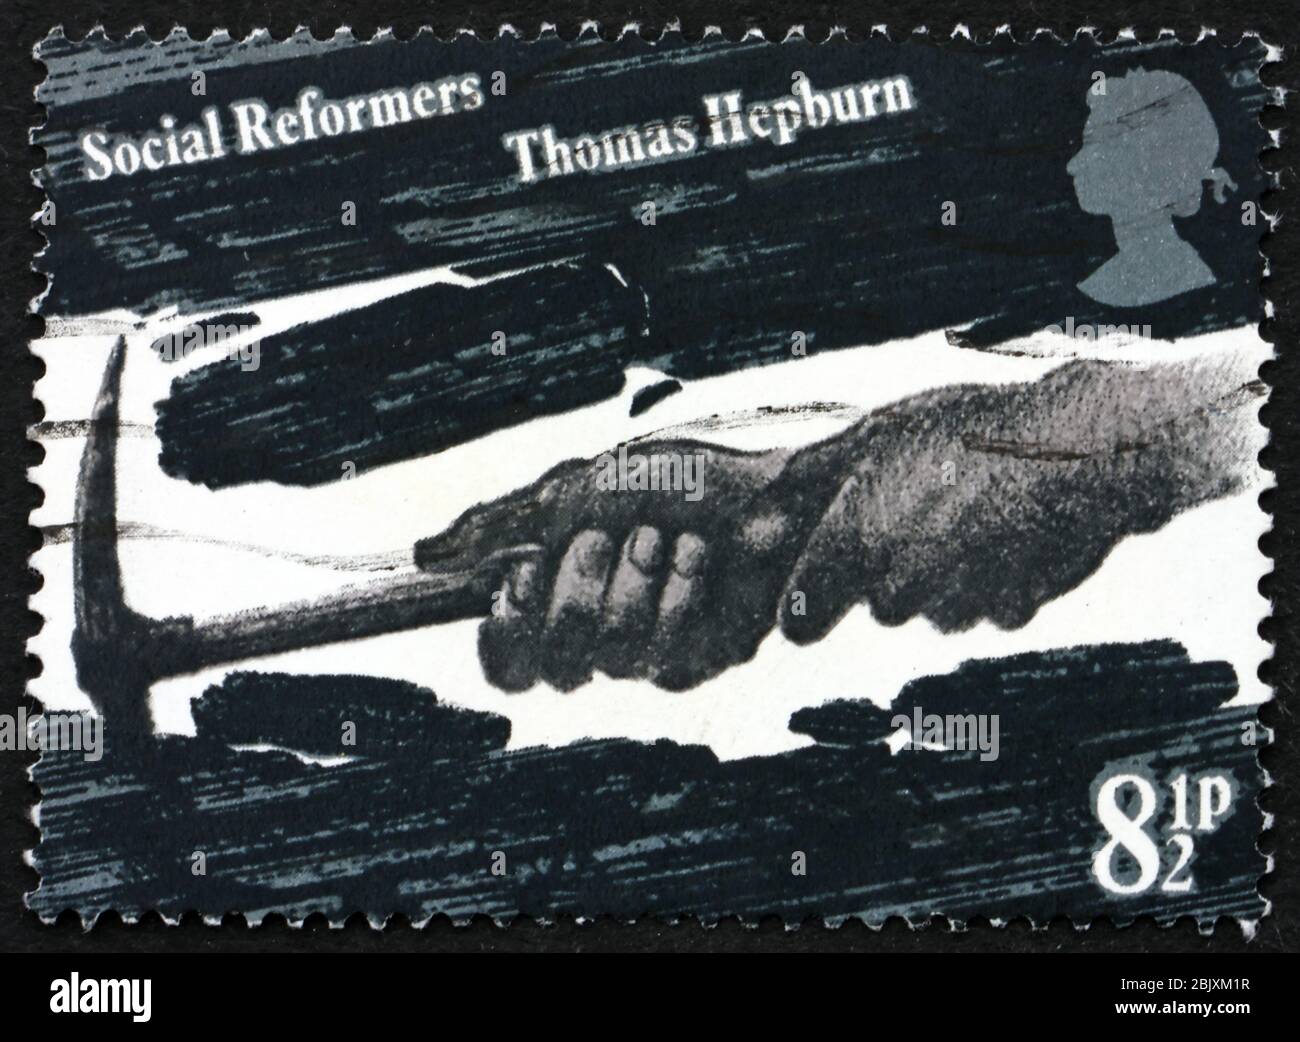 GRAN BRETAÑA - ALREDEDOR de 1976: Un sello impreso en Gran Bretaña muestra las manos de Coal Miner, dedicado a Thomas Hepburn, reformador Social, alrededor de 1976 Foto de stock